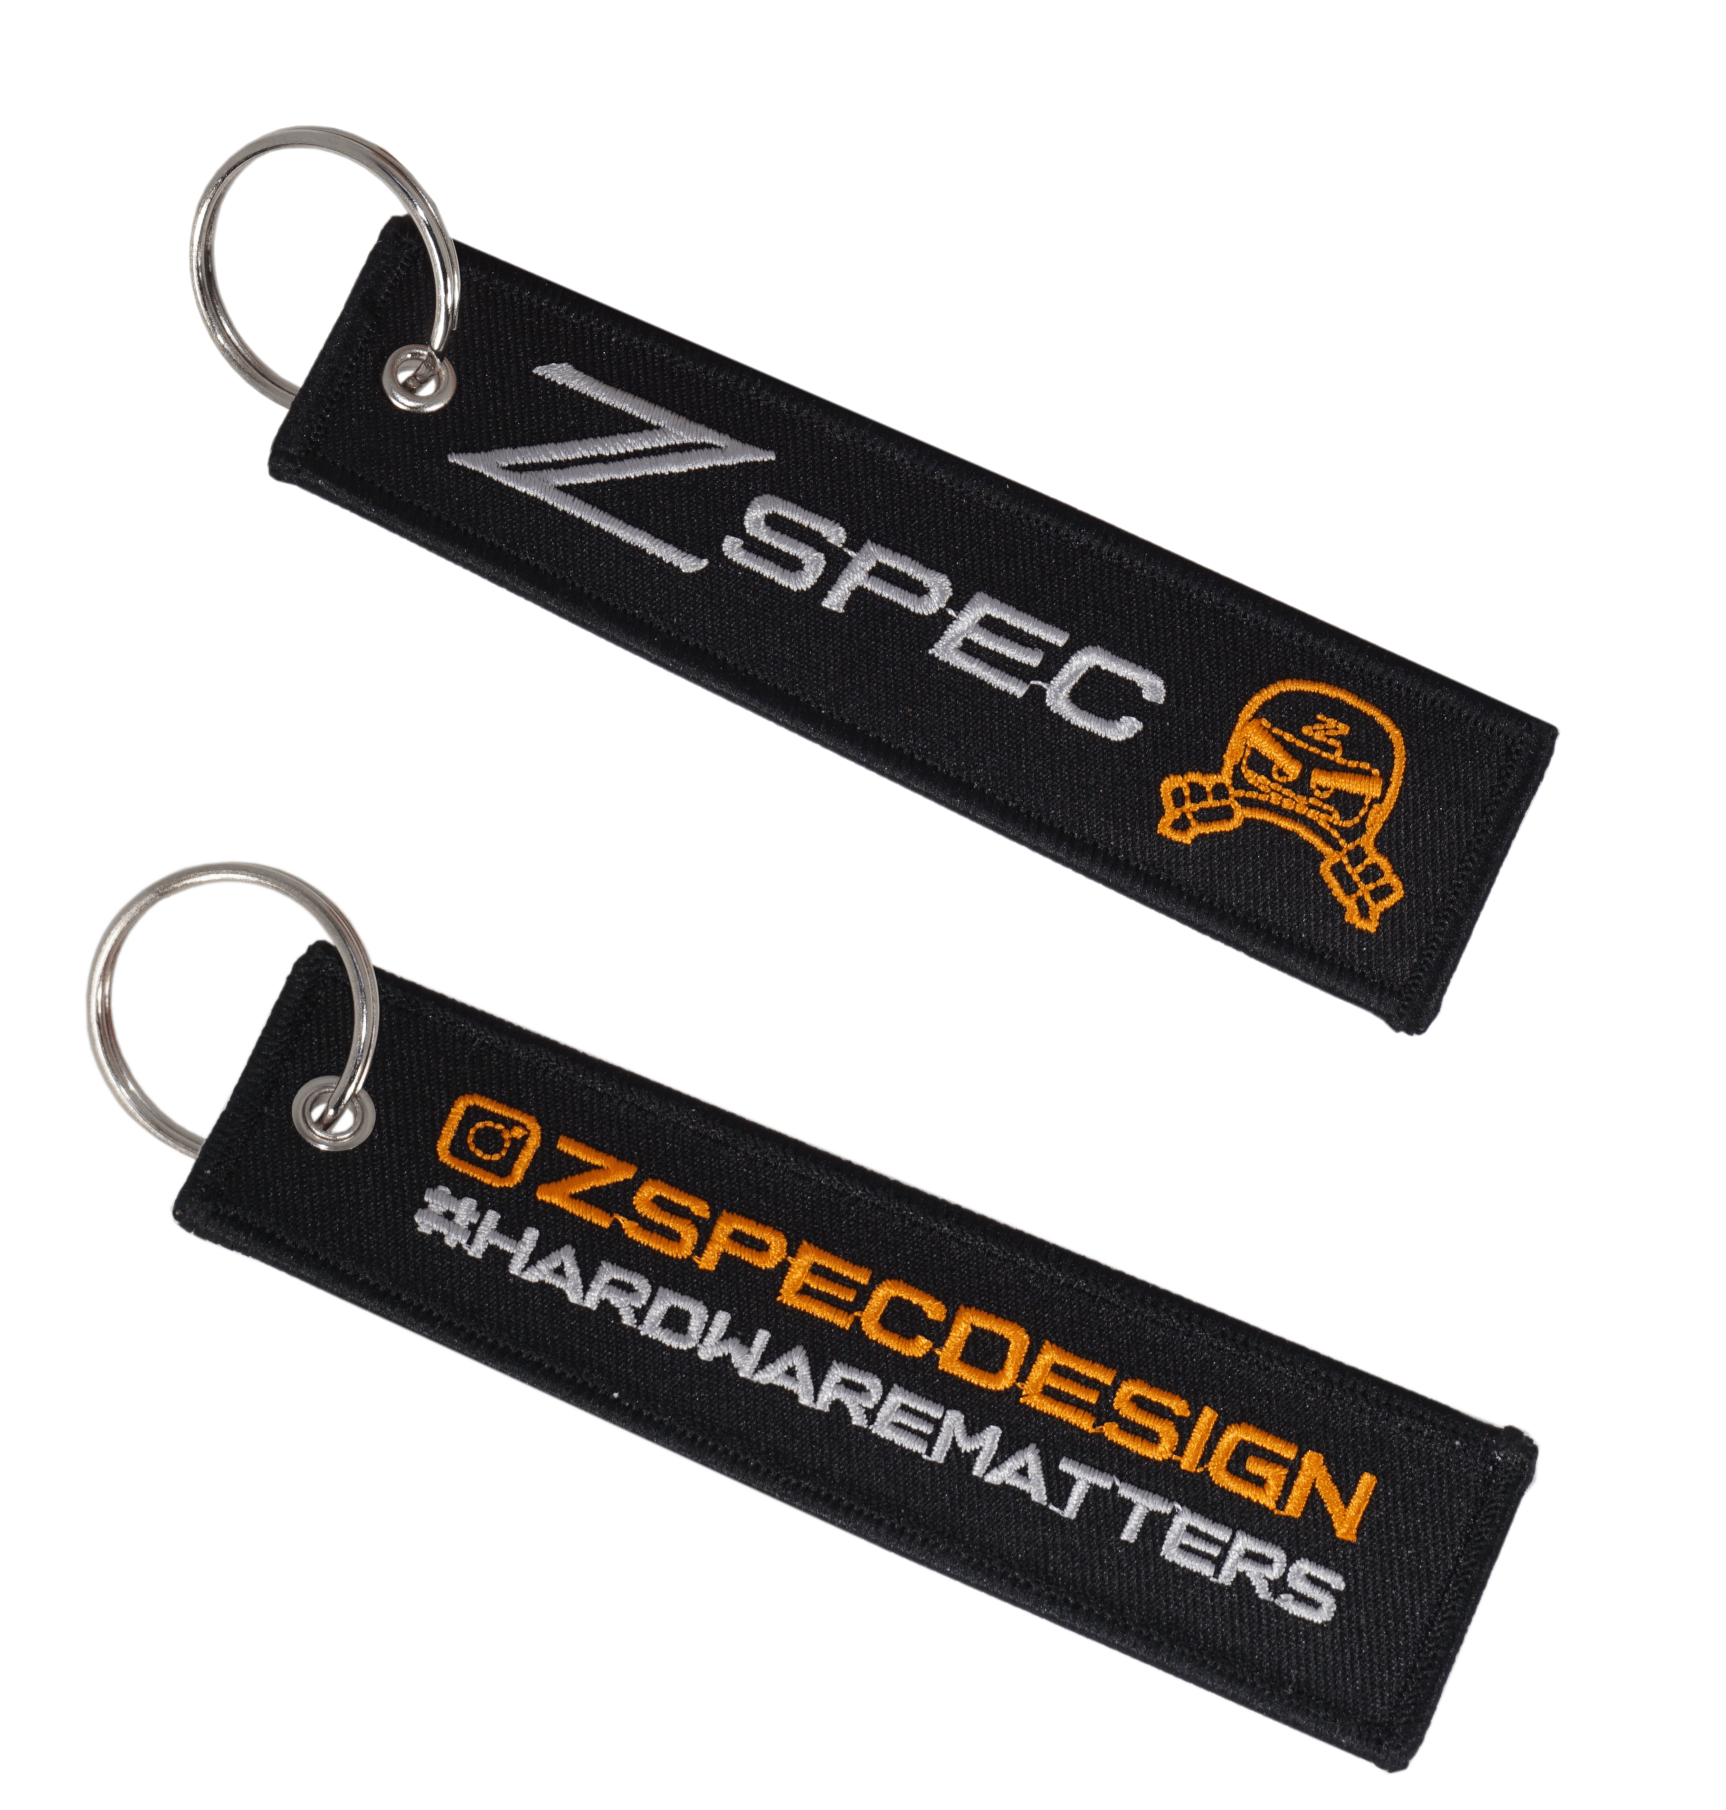 ZSPEC Design Jet Tag Keychains - Red or Black